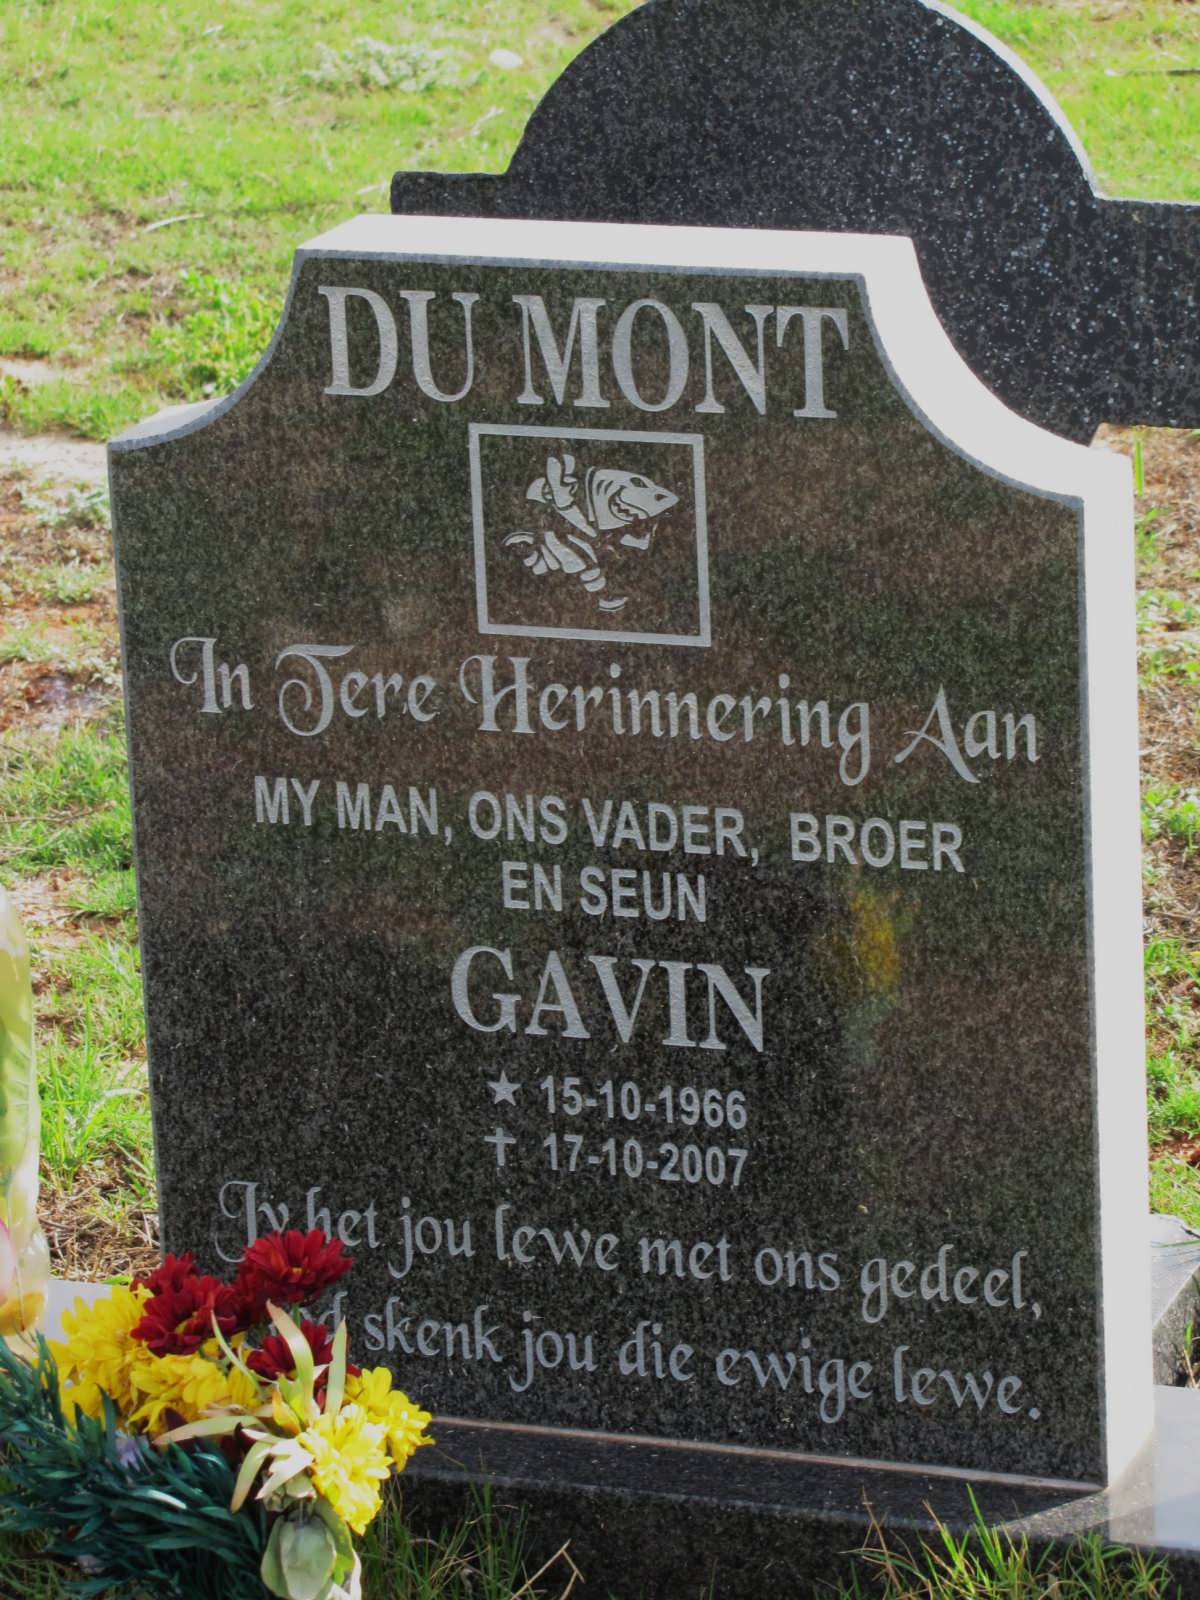 MONT Gavin, du 1966-2007